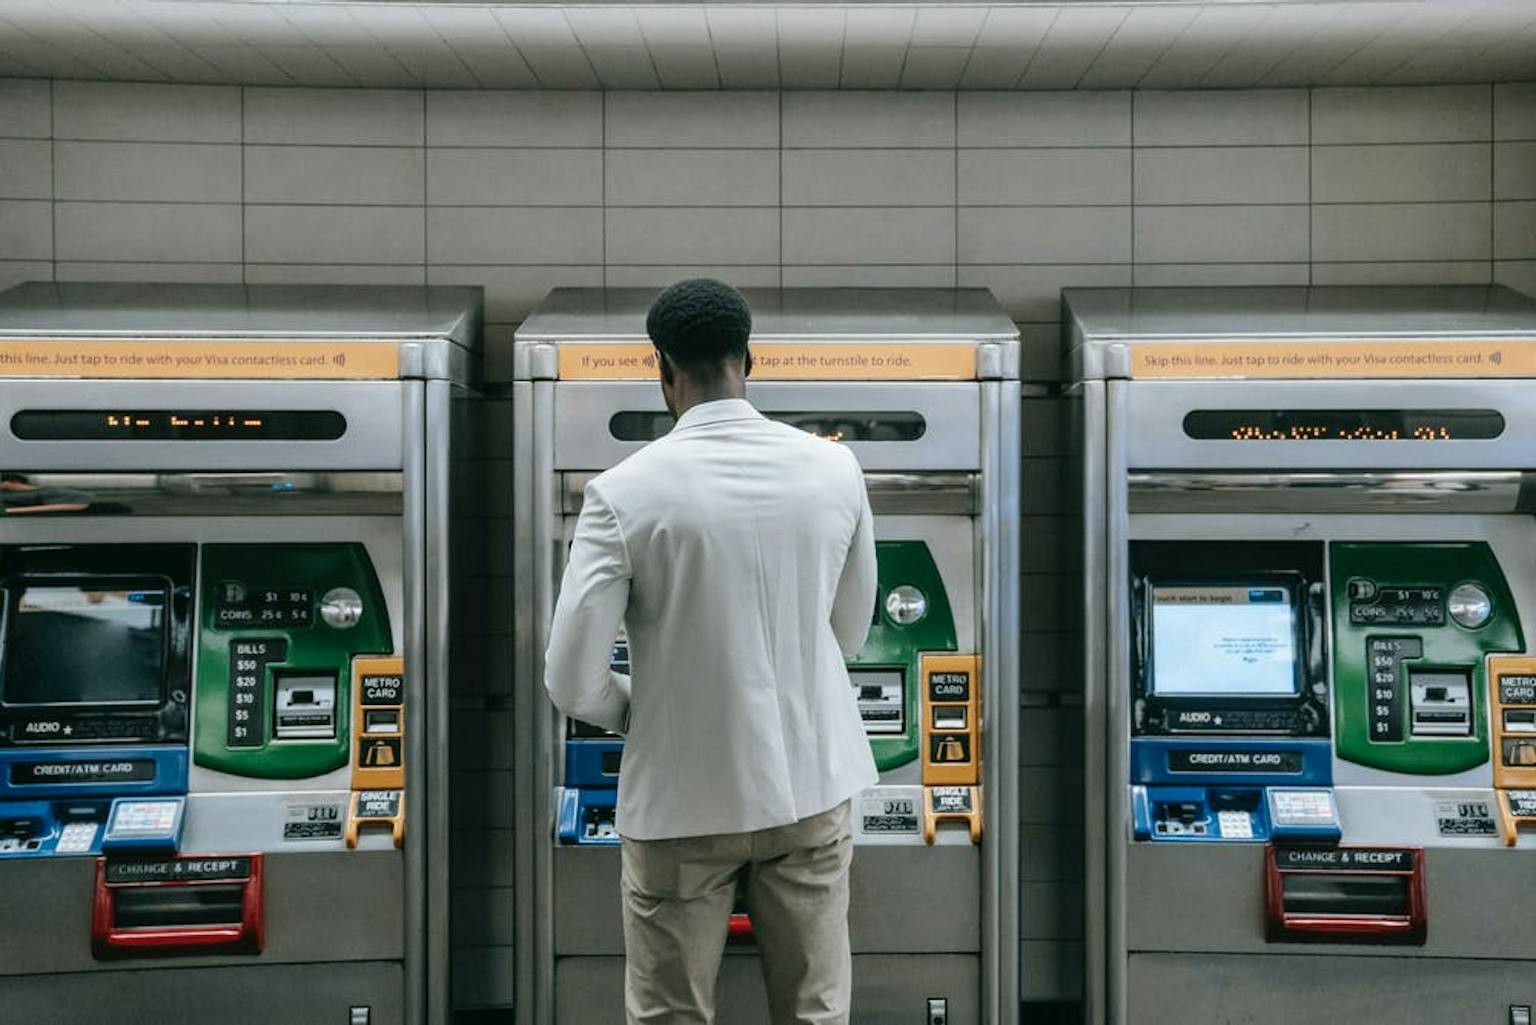 Transfer Antar Bank Dapat Dilakukan Dengan Mudah Menggunakan Mesin ATM